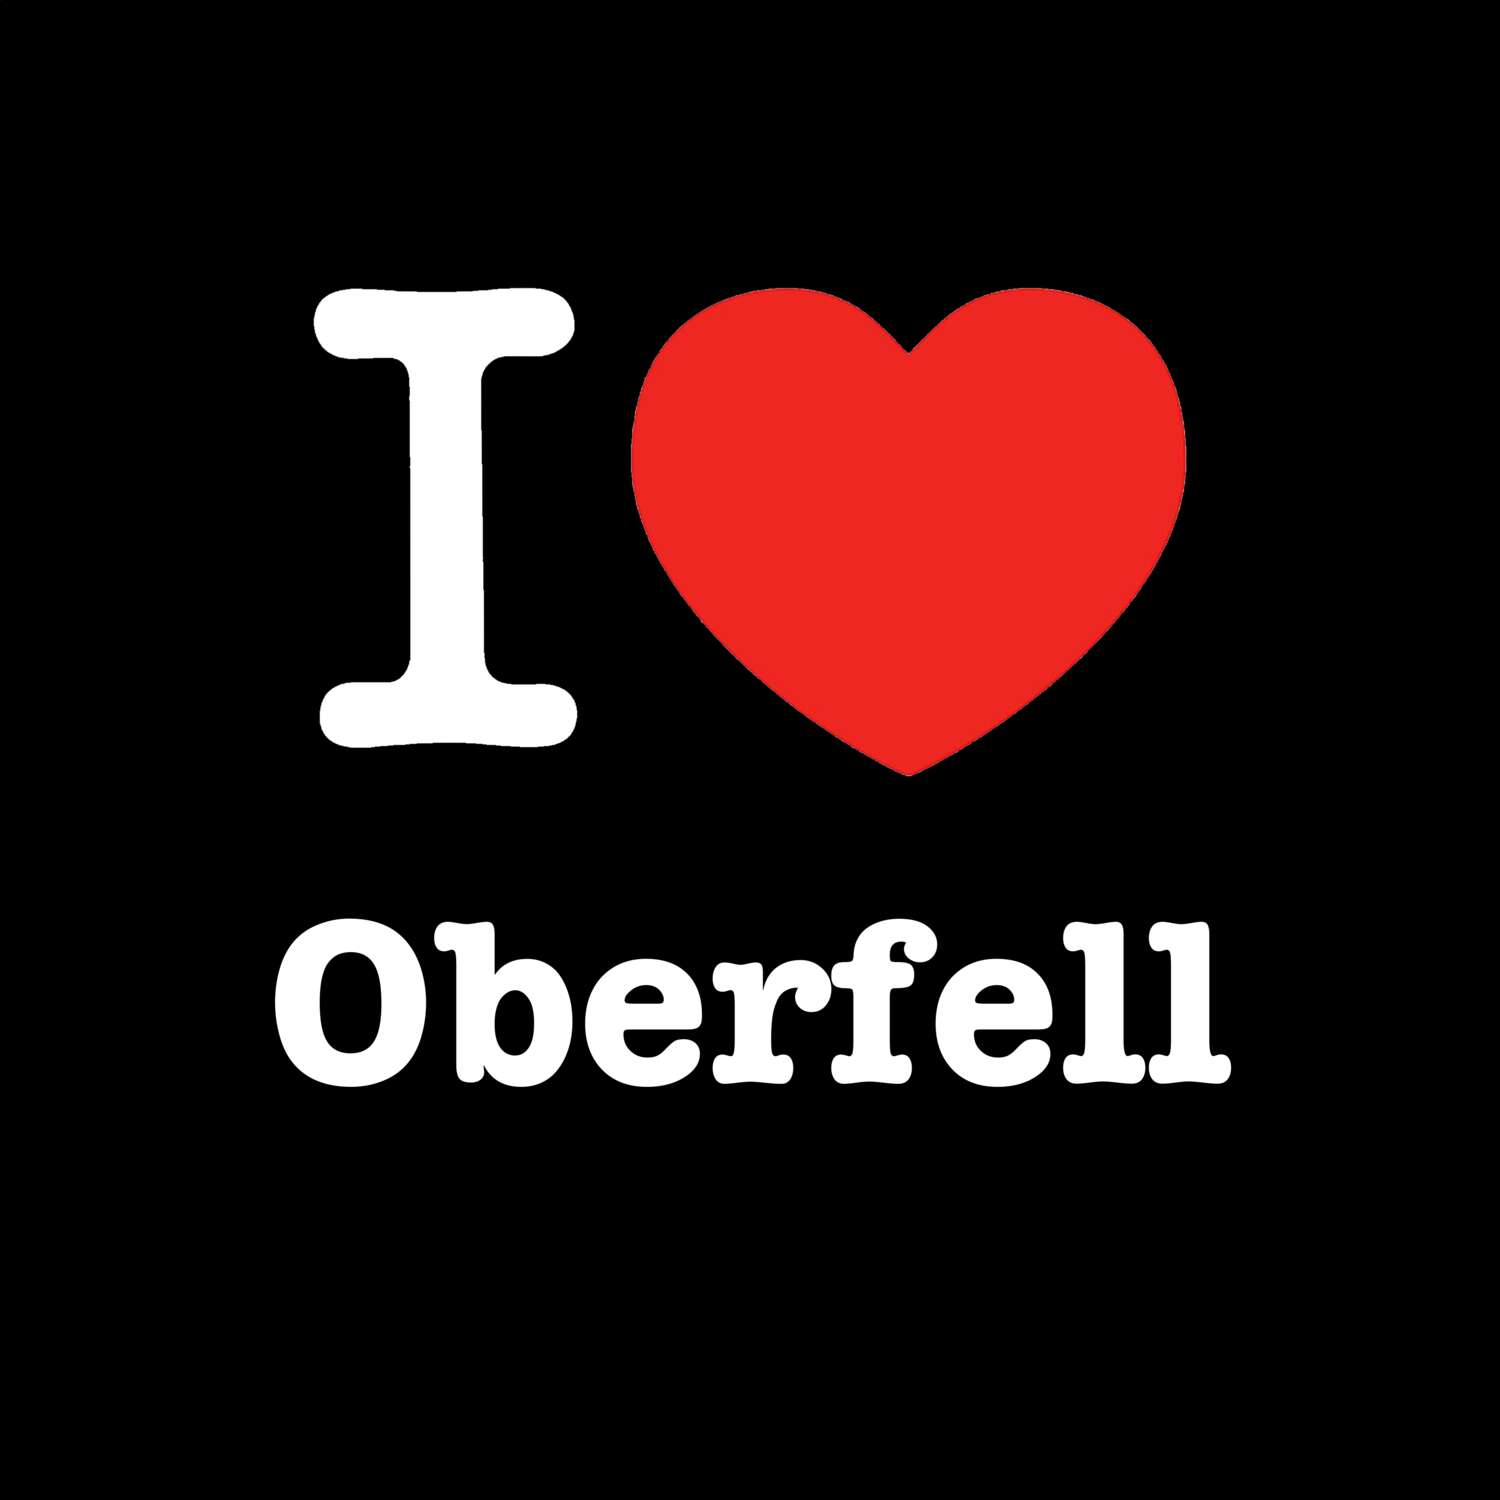 Oberfell T-Shirt »I love«